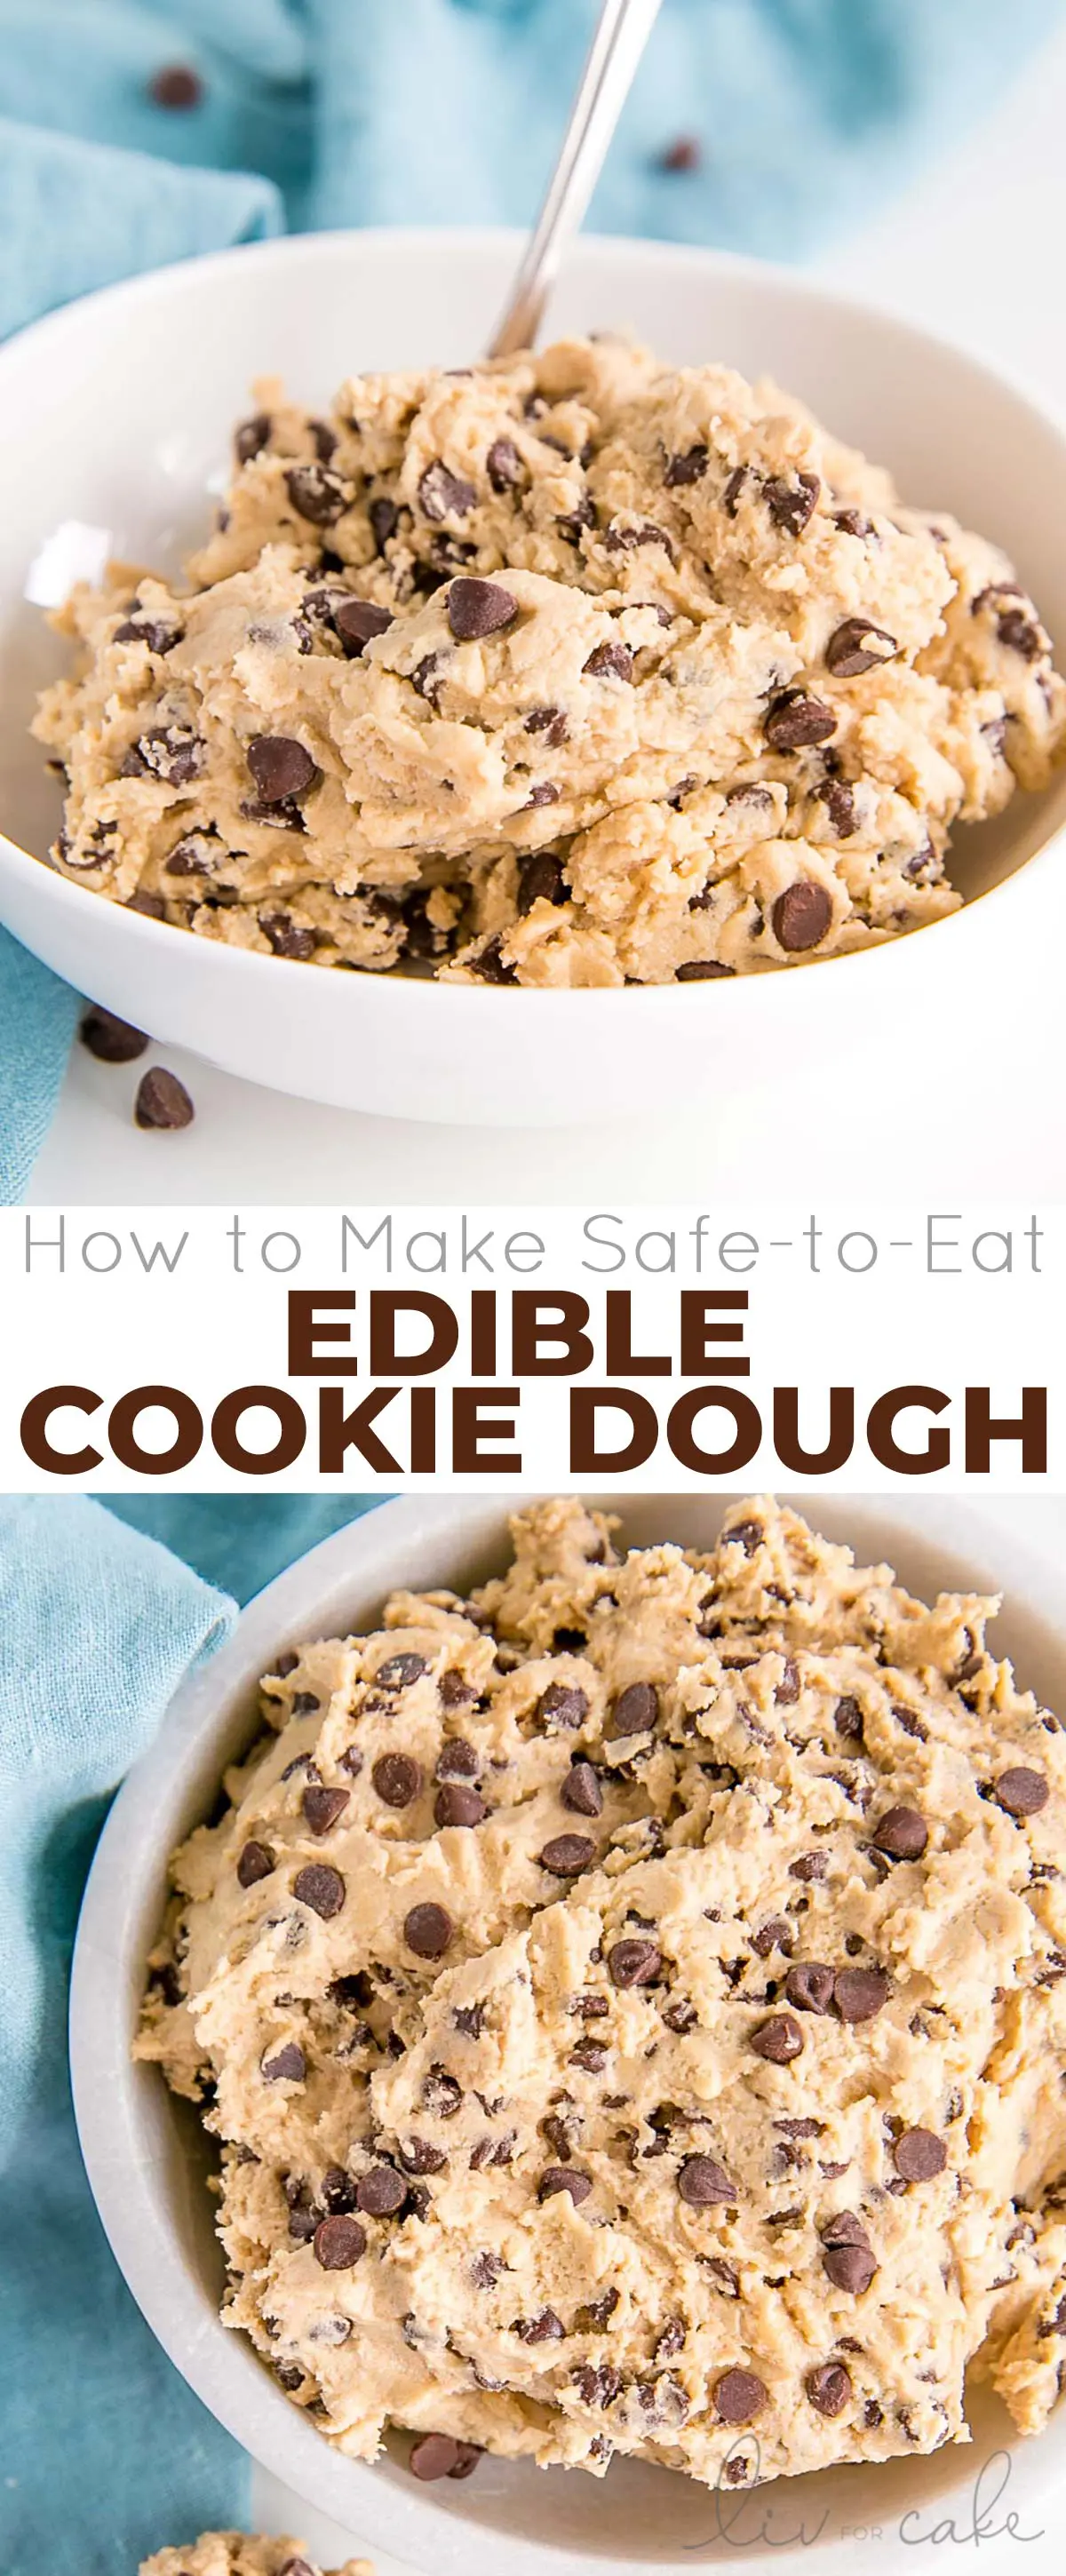 Edible cookie dough photo collage.